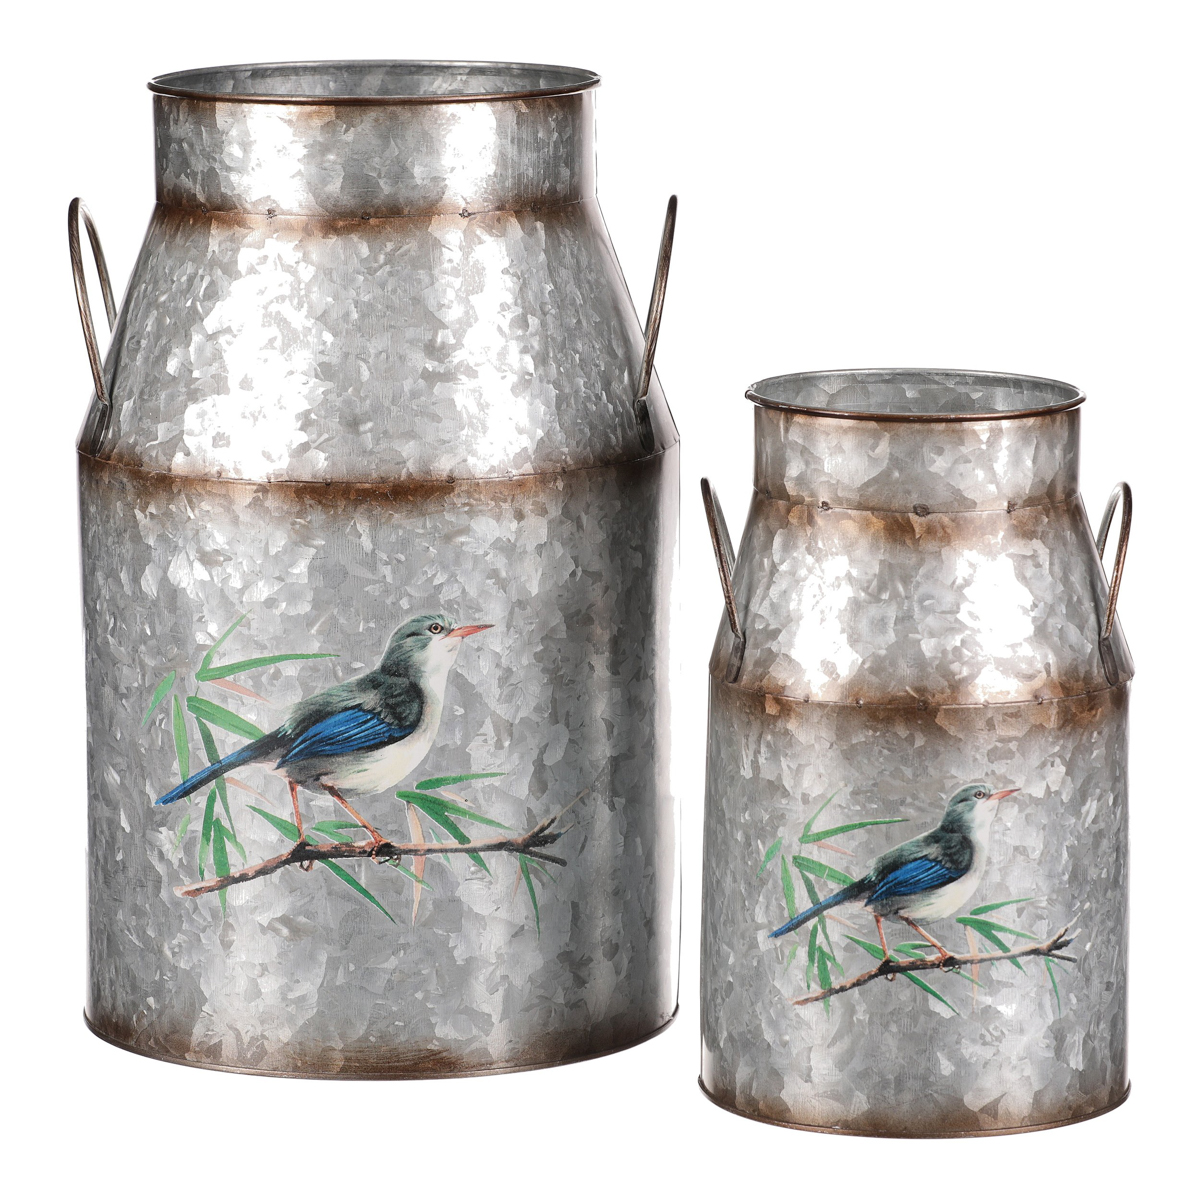 Kovová váza, sada 2ks, design s ptáčky.